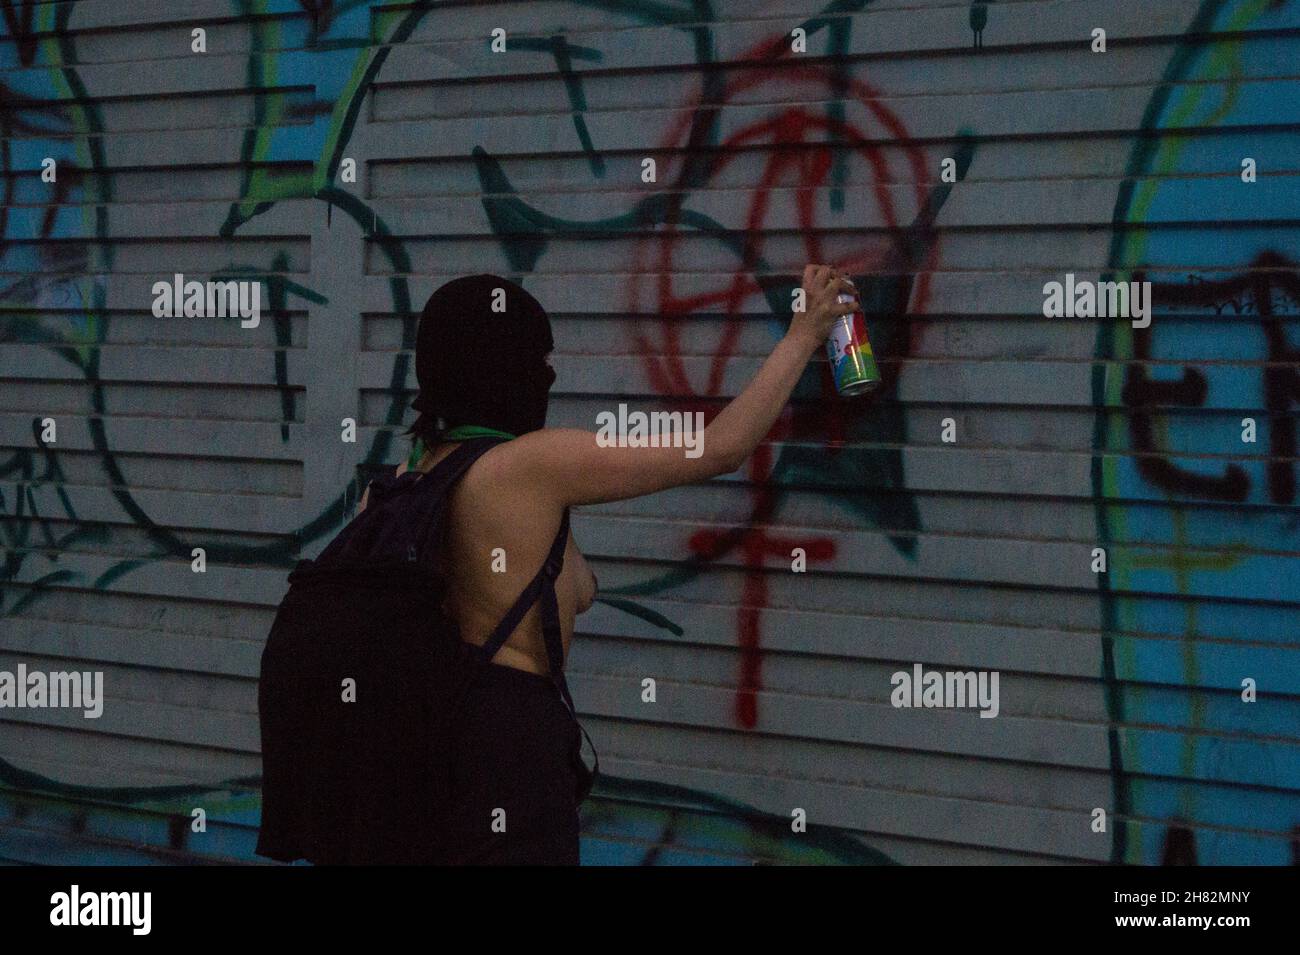 Am Internationalen Tag zur Beseitigung von Gewalt gegen Frauen in Bogota, Kolumbien, am 25. November 2021, machen Frauen Graffiti und Straßenbilder, die das Bewusstsein für Feminismus und Feminizide zeigen. Stockfoto